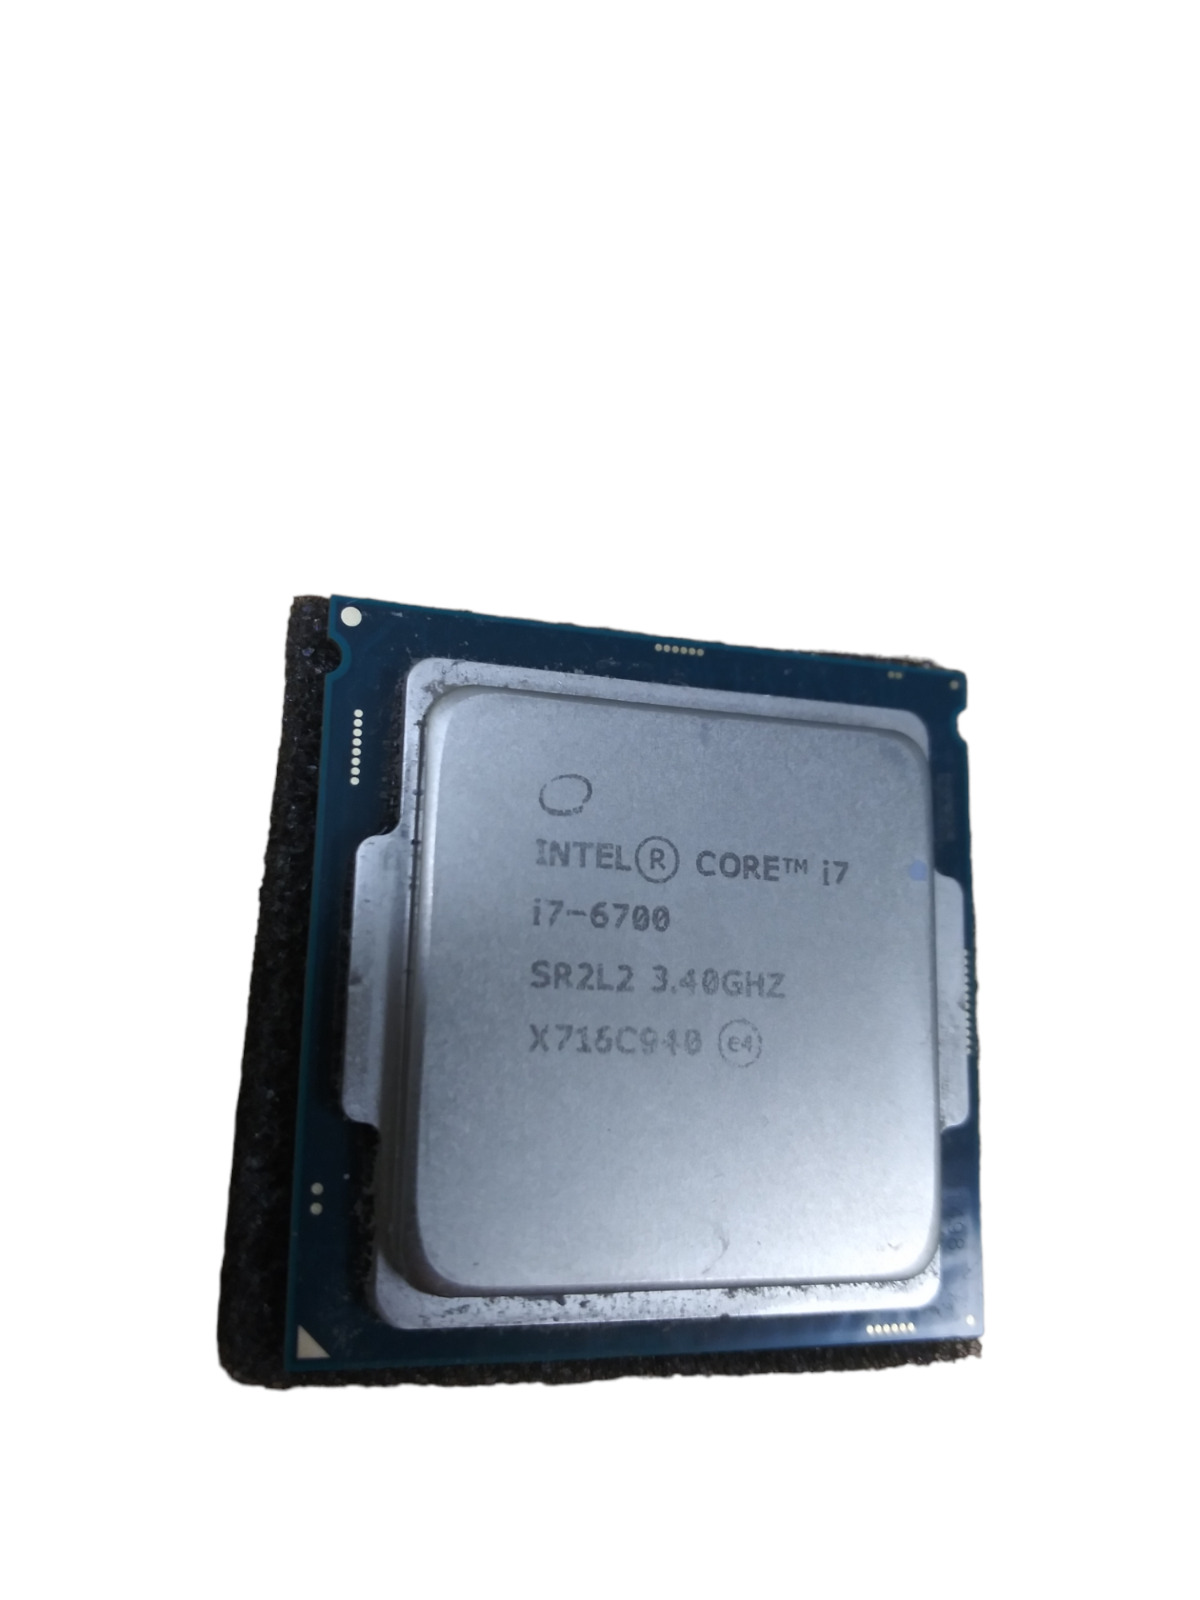 Intel Core i7-6700 3.4GHz SR2L2 8MB Socket 1151 CPU Processor Quad-Core